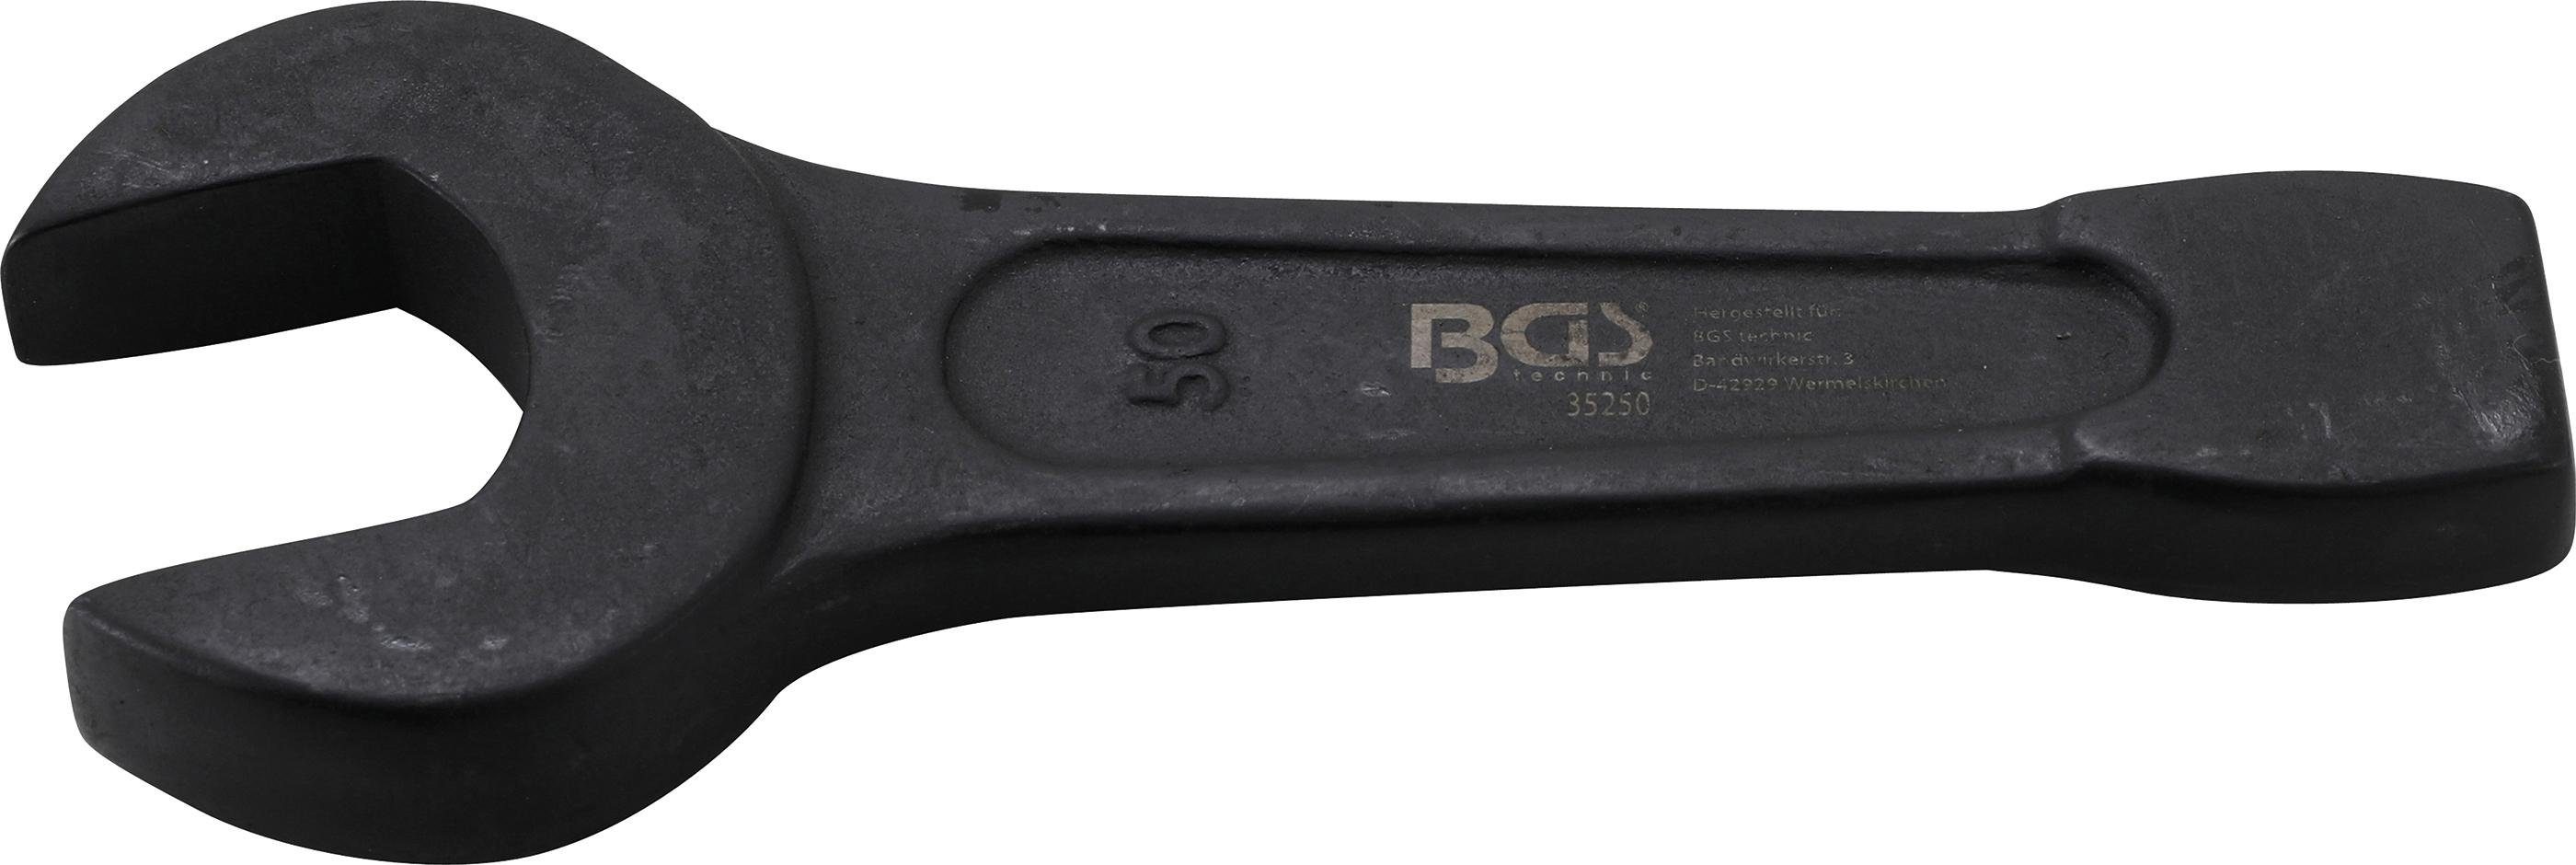 BGS technic Maulschlüssel Schlag-Maulschlüssel, SW 50 mm